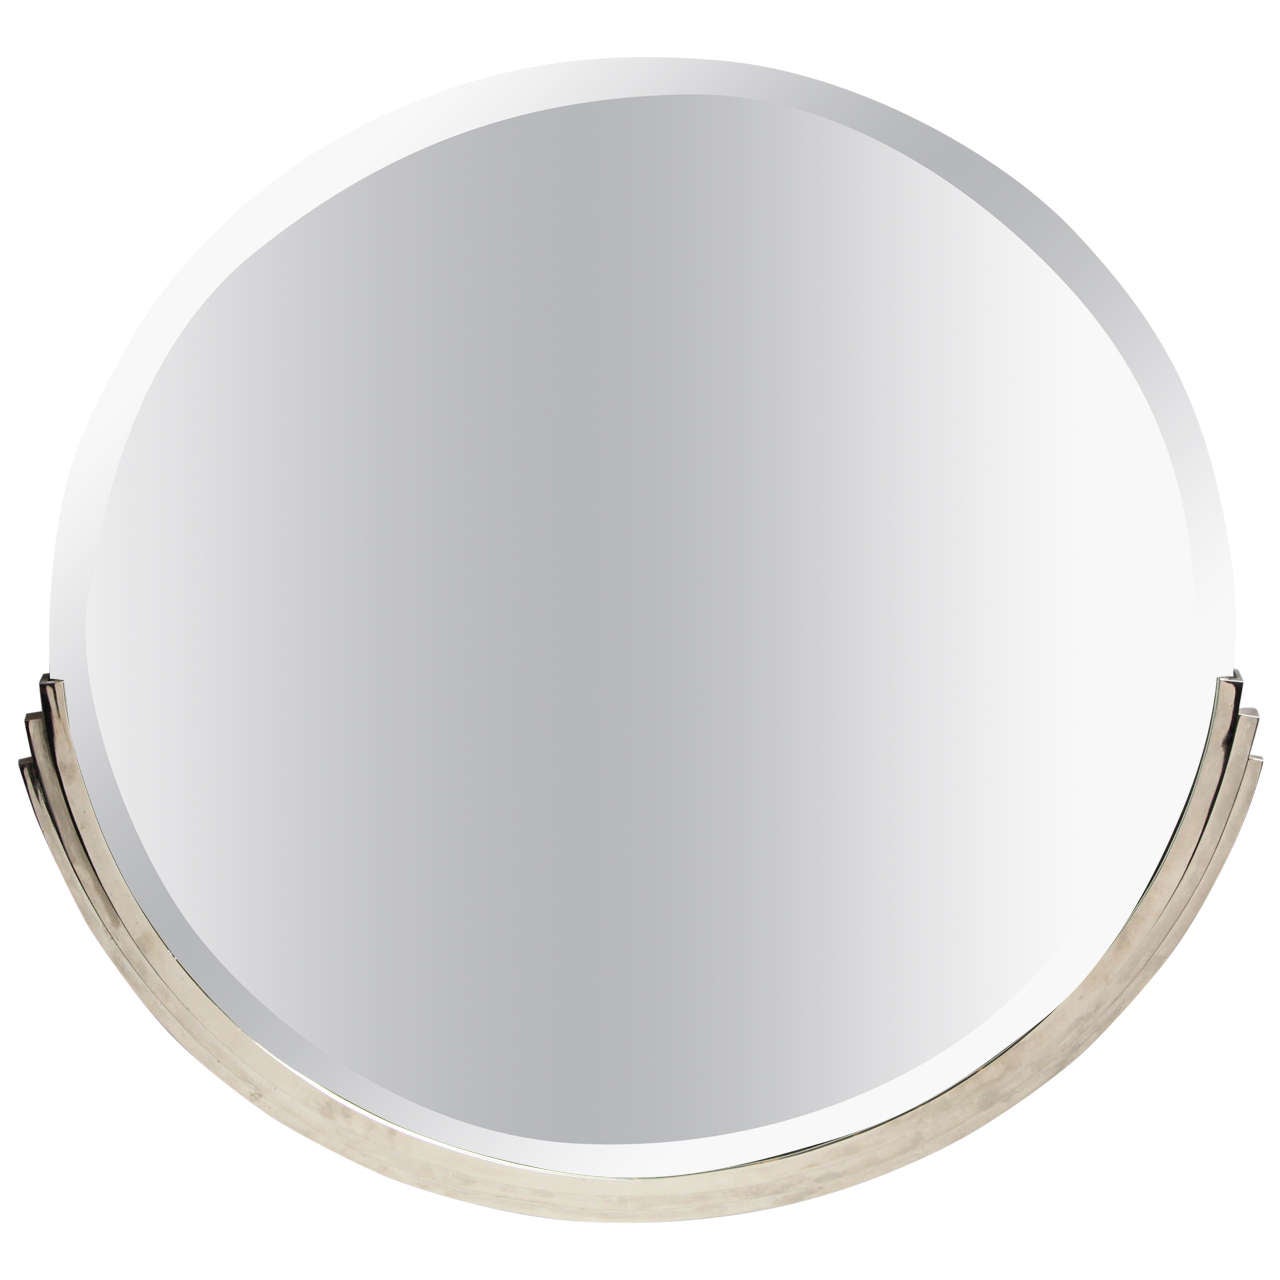 Modernist Round Wall Mirror